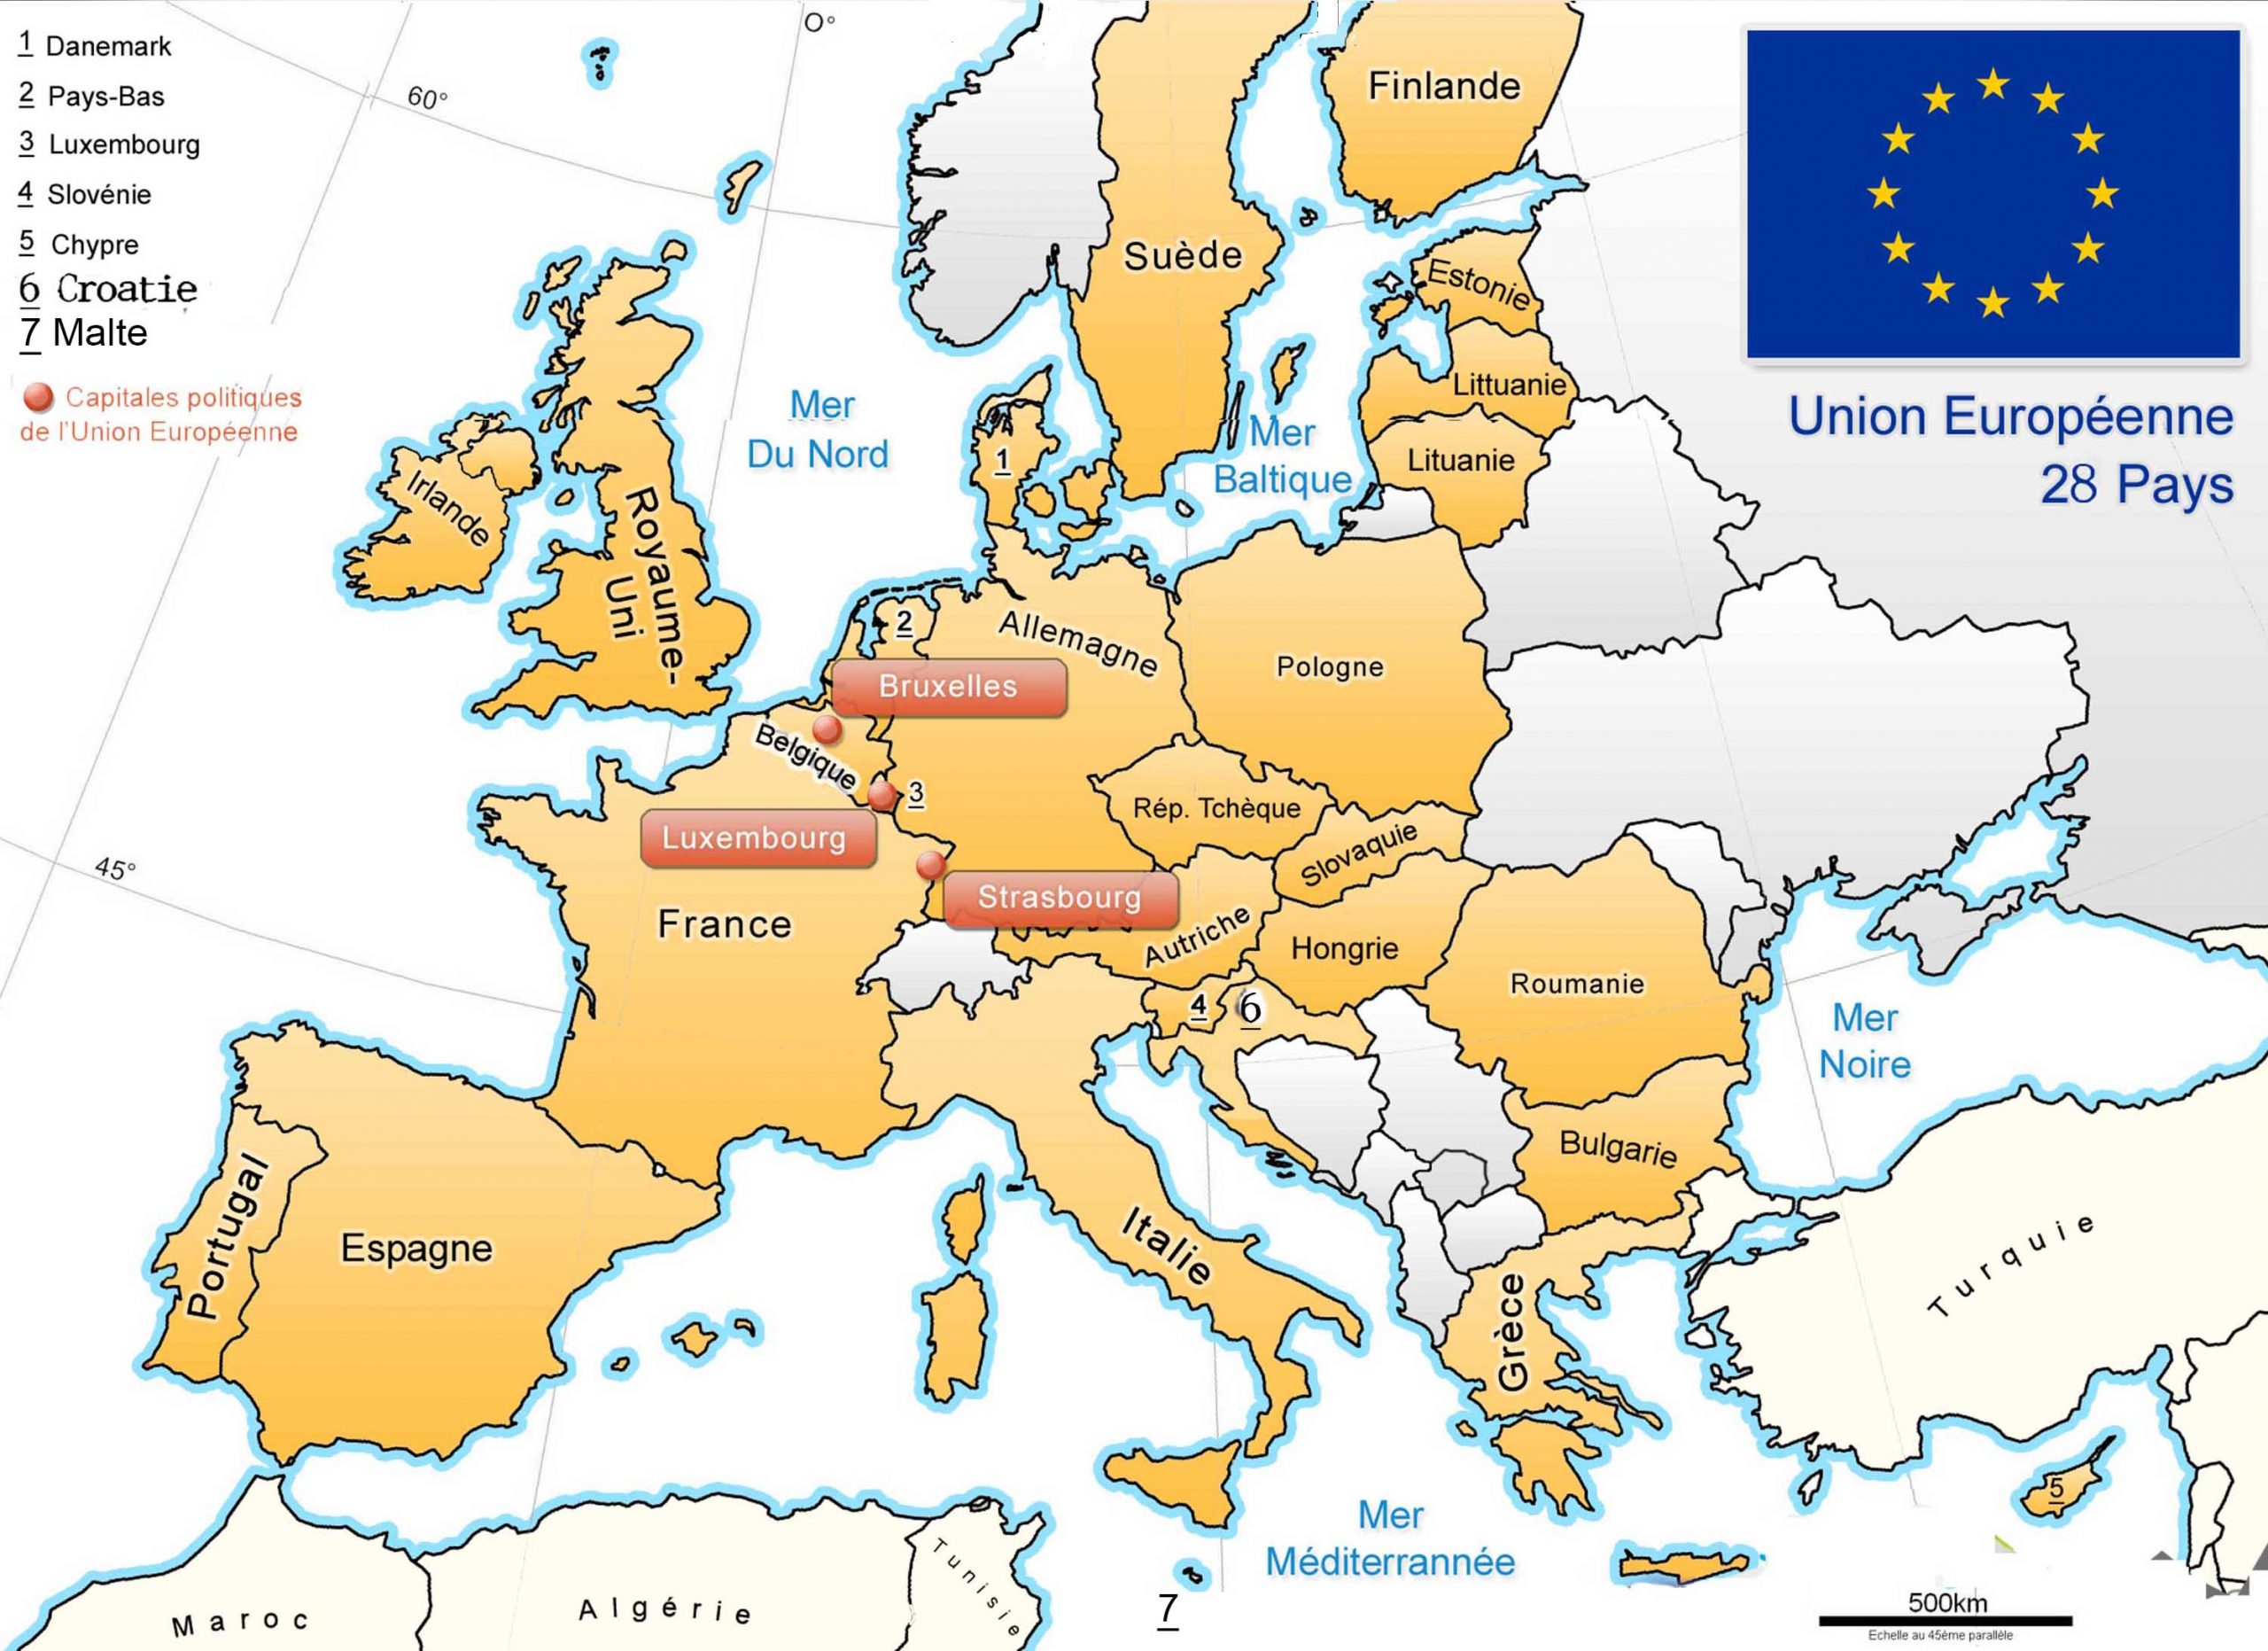 Apprendre À Placer Les Pays De L' Union Européenne - Le Blog dedans Carte D Europe Capitale